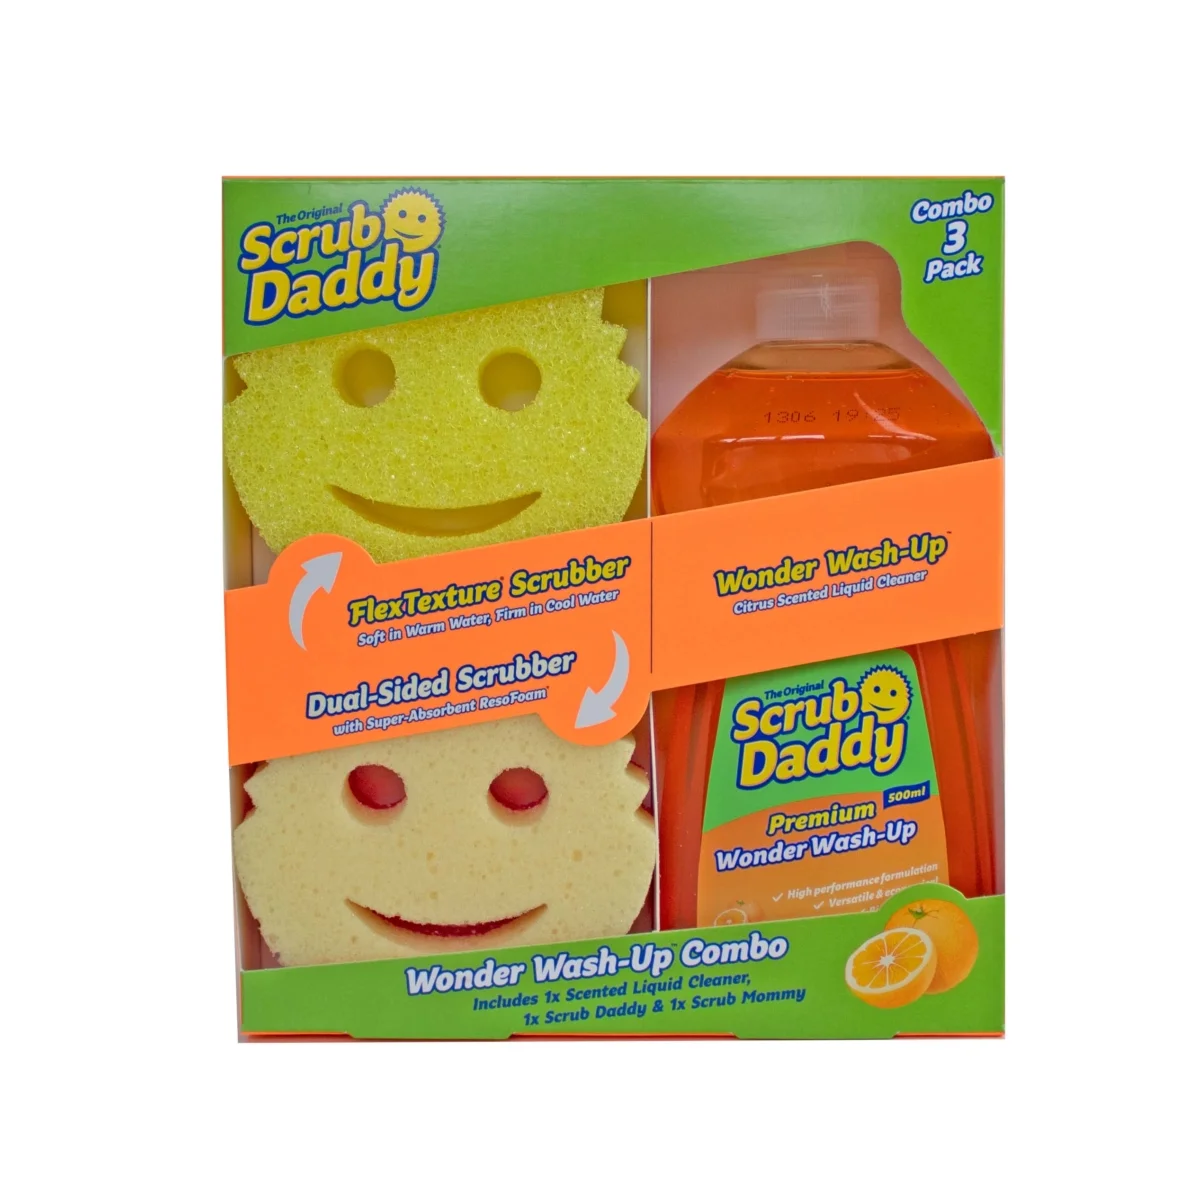 Scrub Daddy UK - SAVE a huge 40% on this Scrub Daddy bundle on